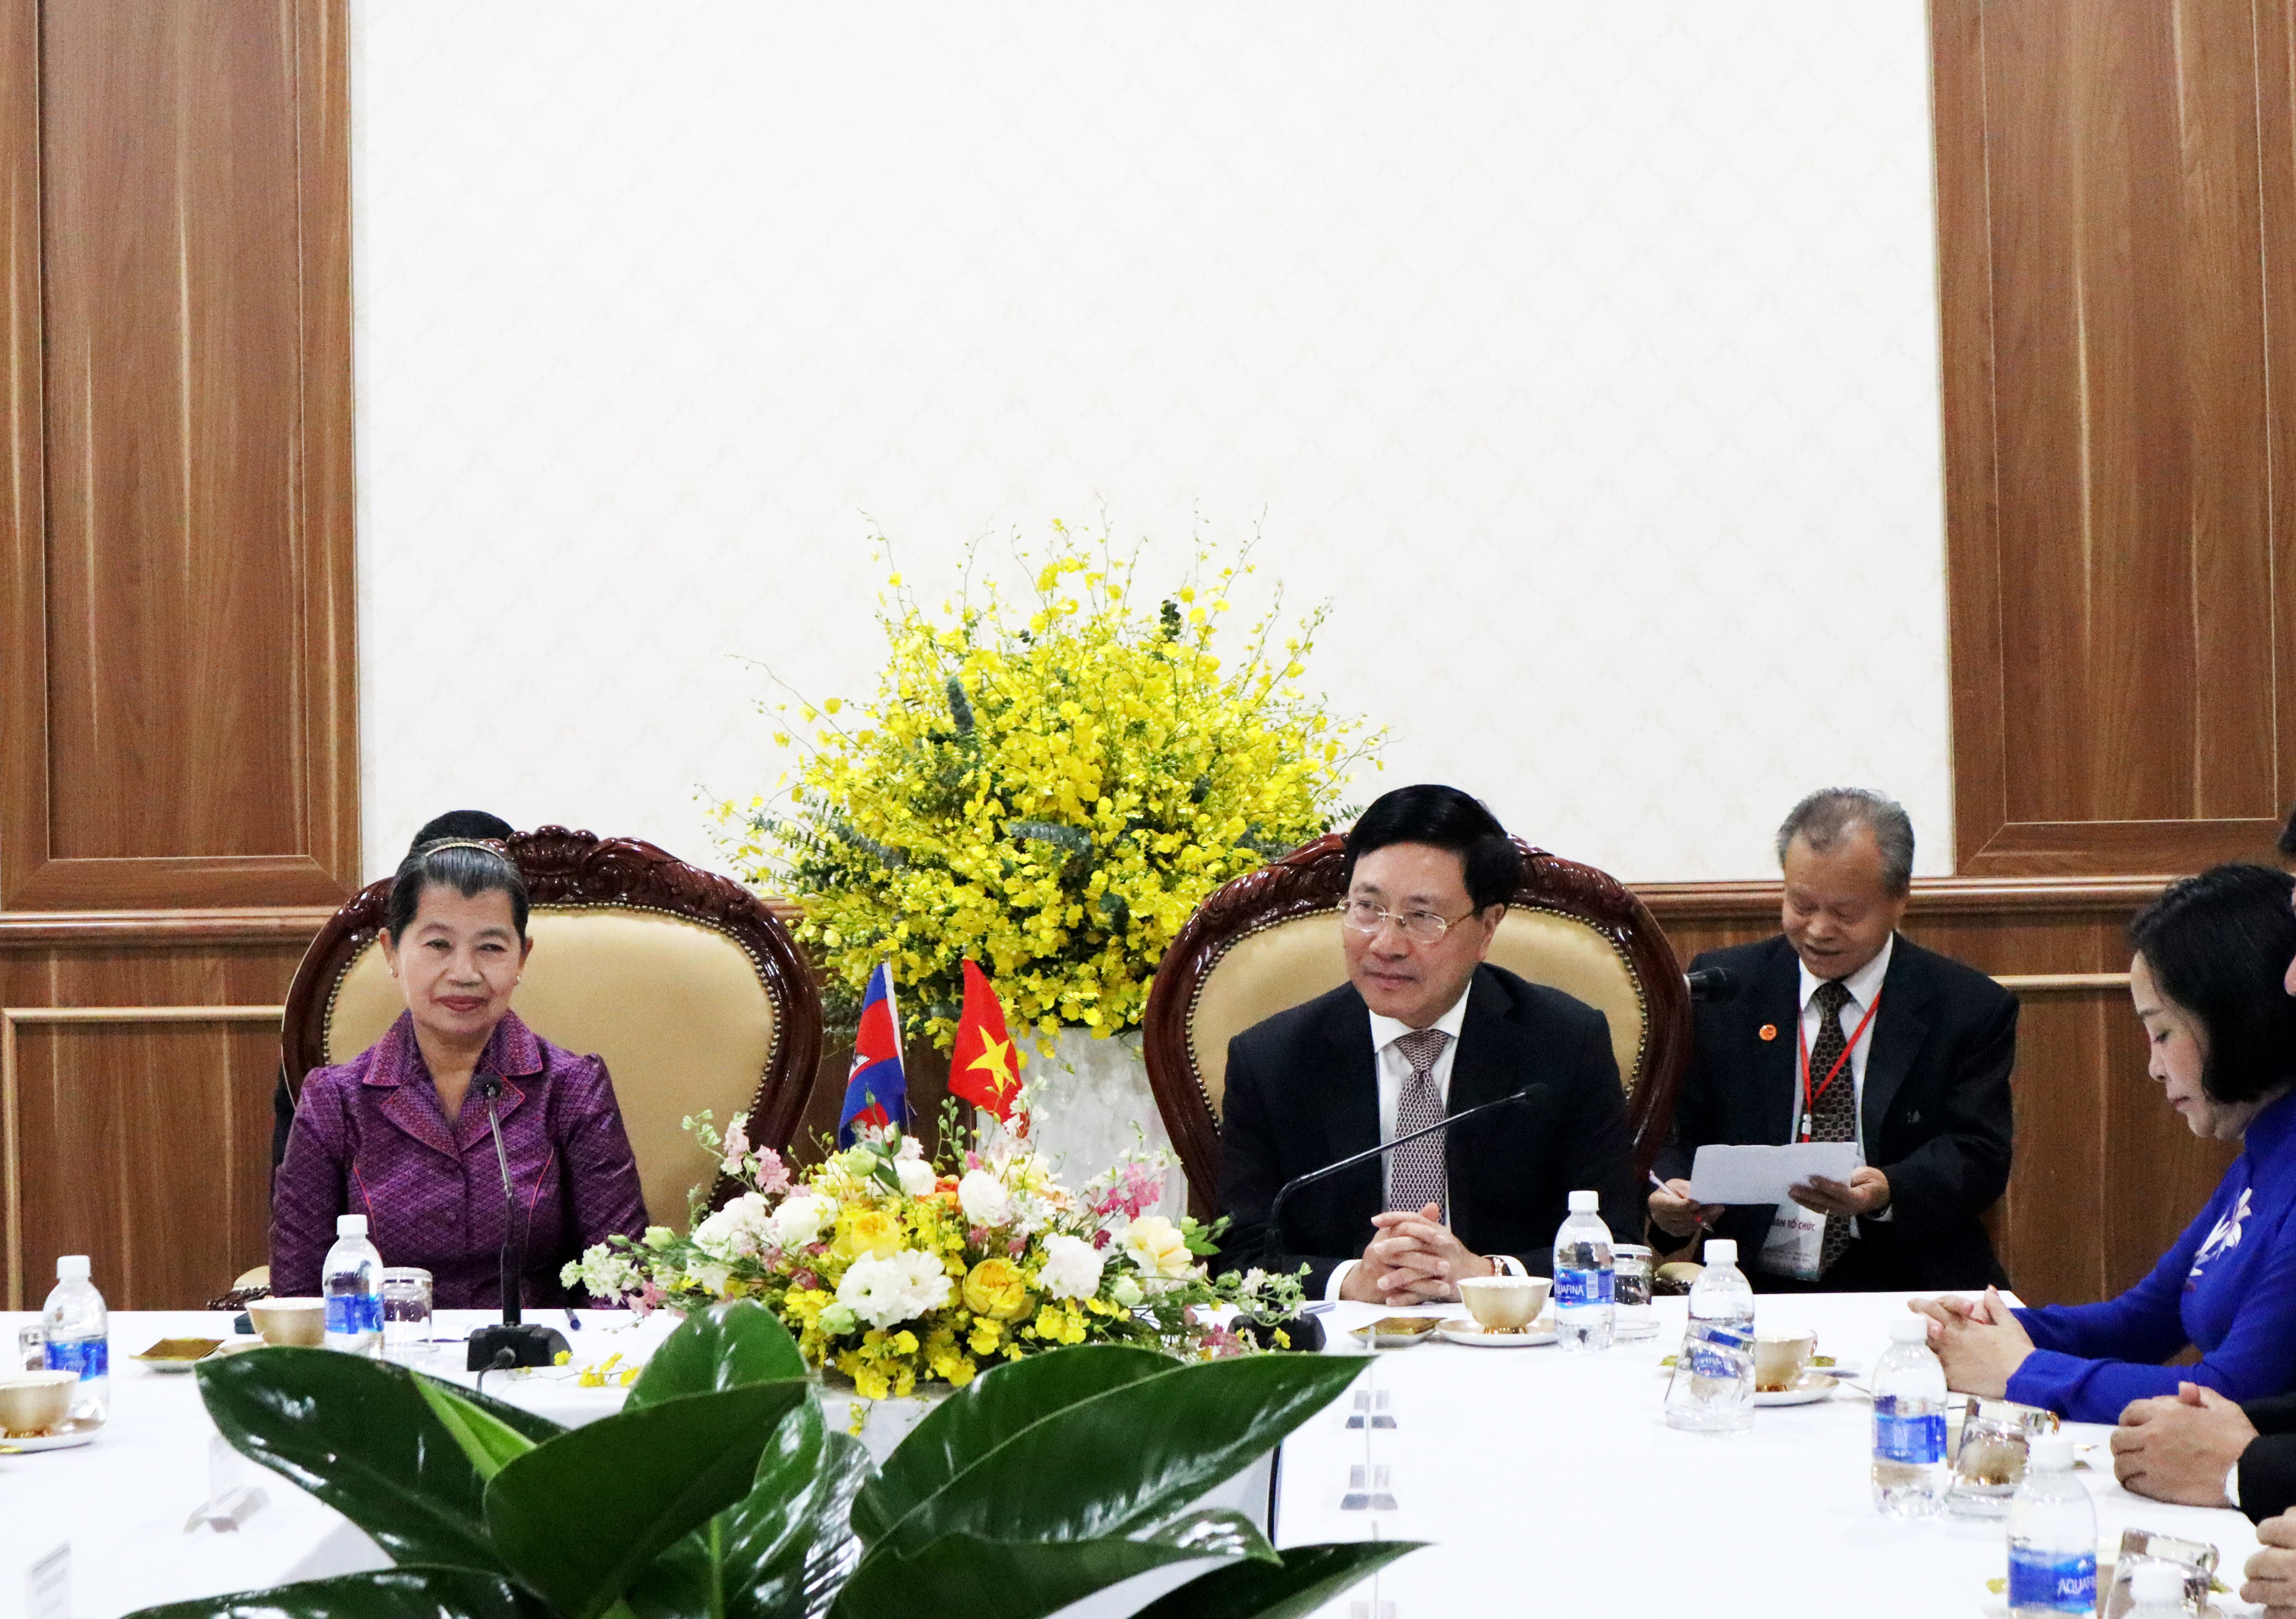 Phó Thủ tướng Thường trực Chính phủ đã tiếp bà Men Sam An, Phó Chủ tịch Đảng Nhân dân Campuchia, Phó Thủ tướng Vương quốc Campuchia, Chủ tịch Hội hữu nghị Campuchia – Việt Nam, Trưởng đoàn đại biểu nhân dân Campuchia